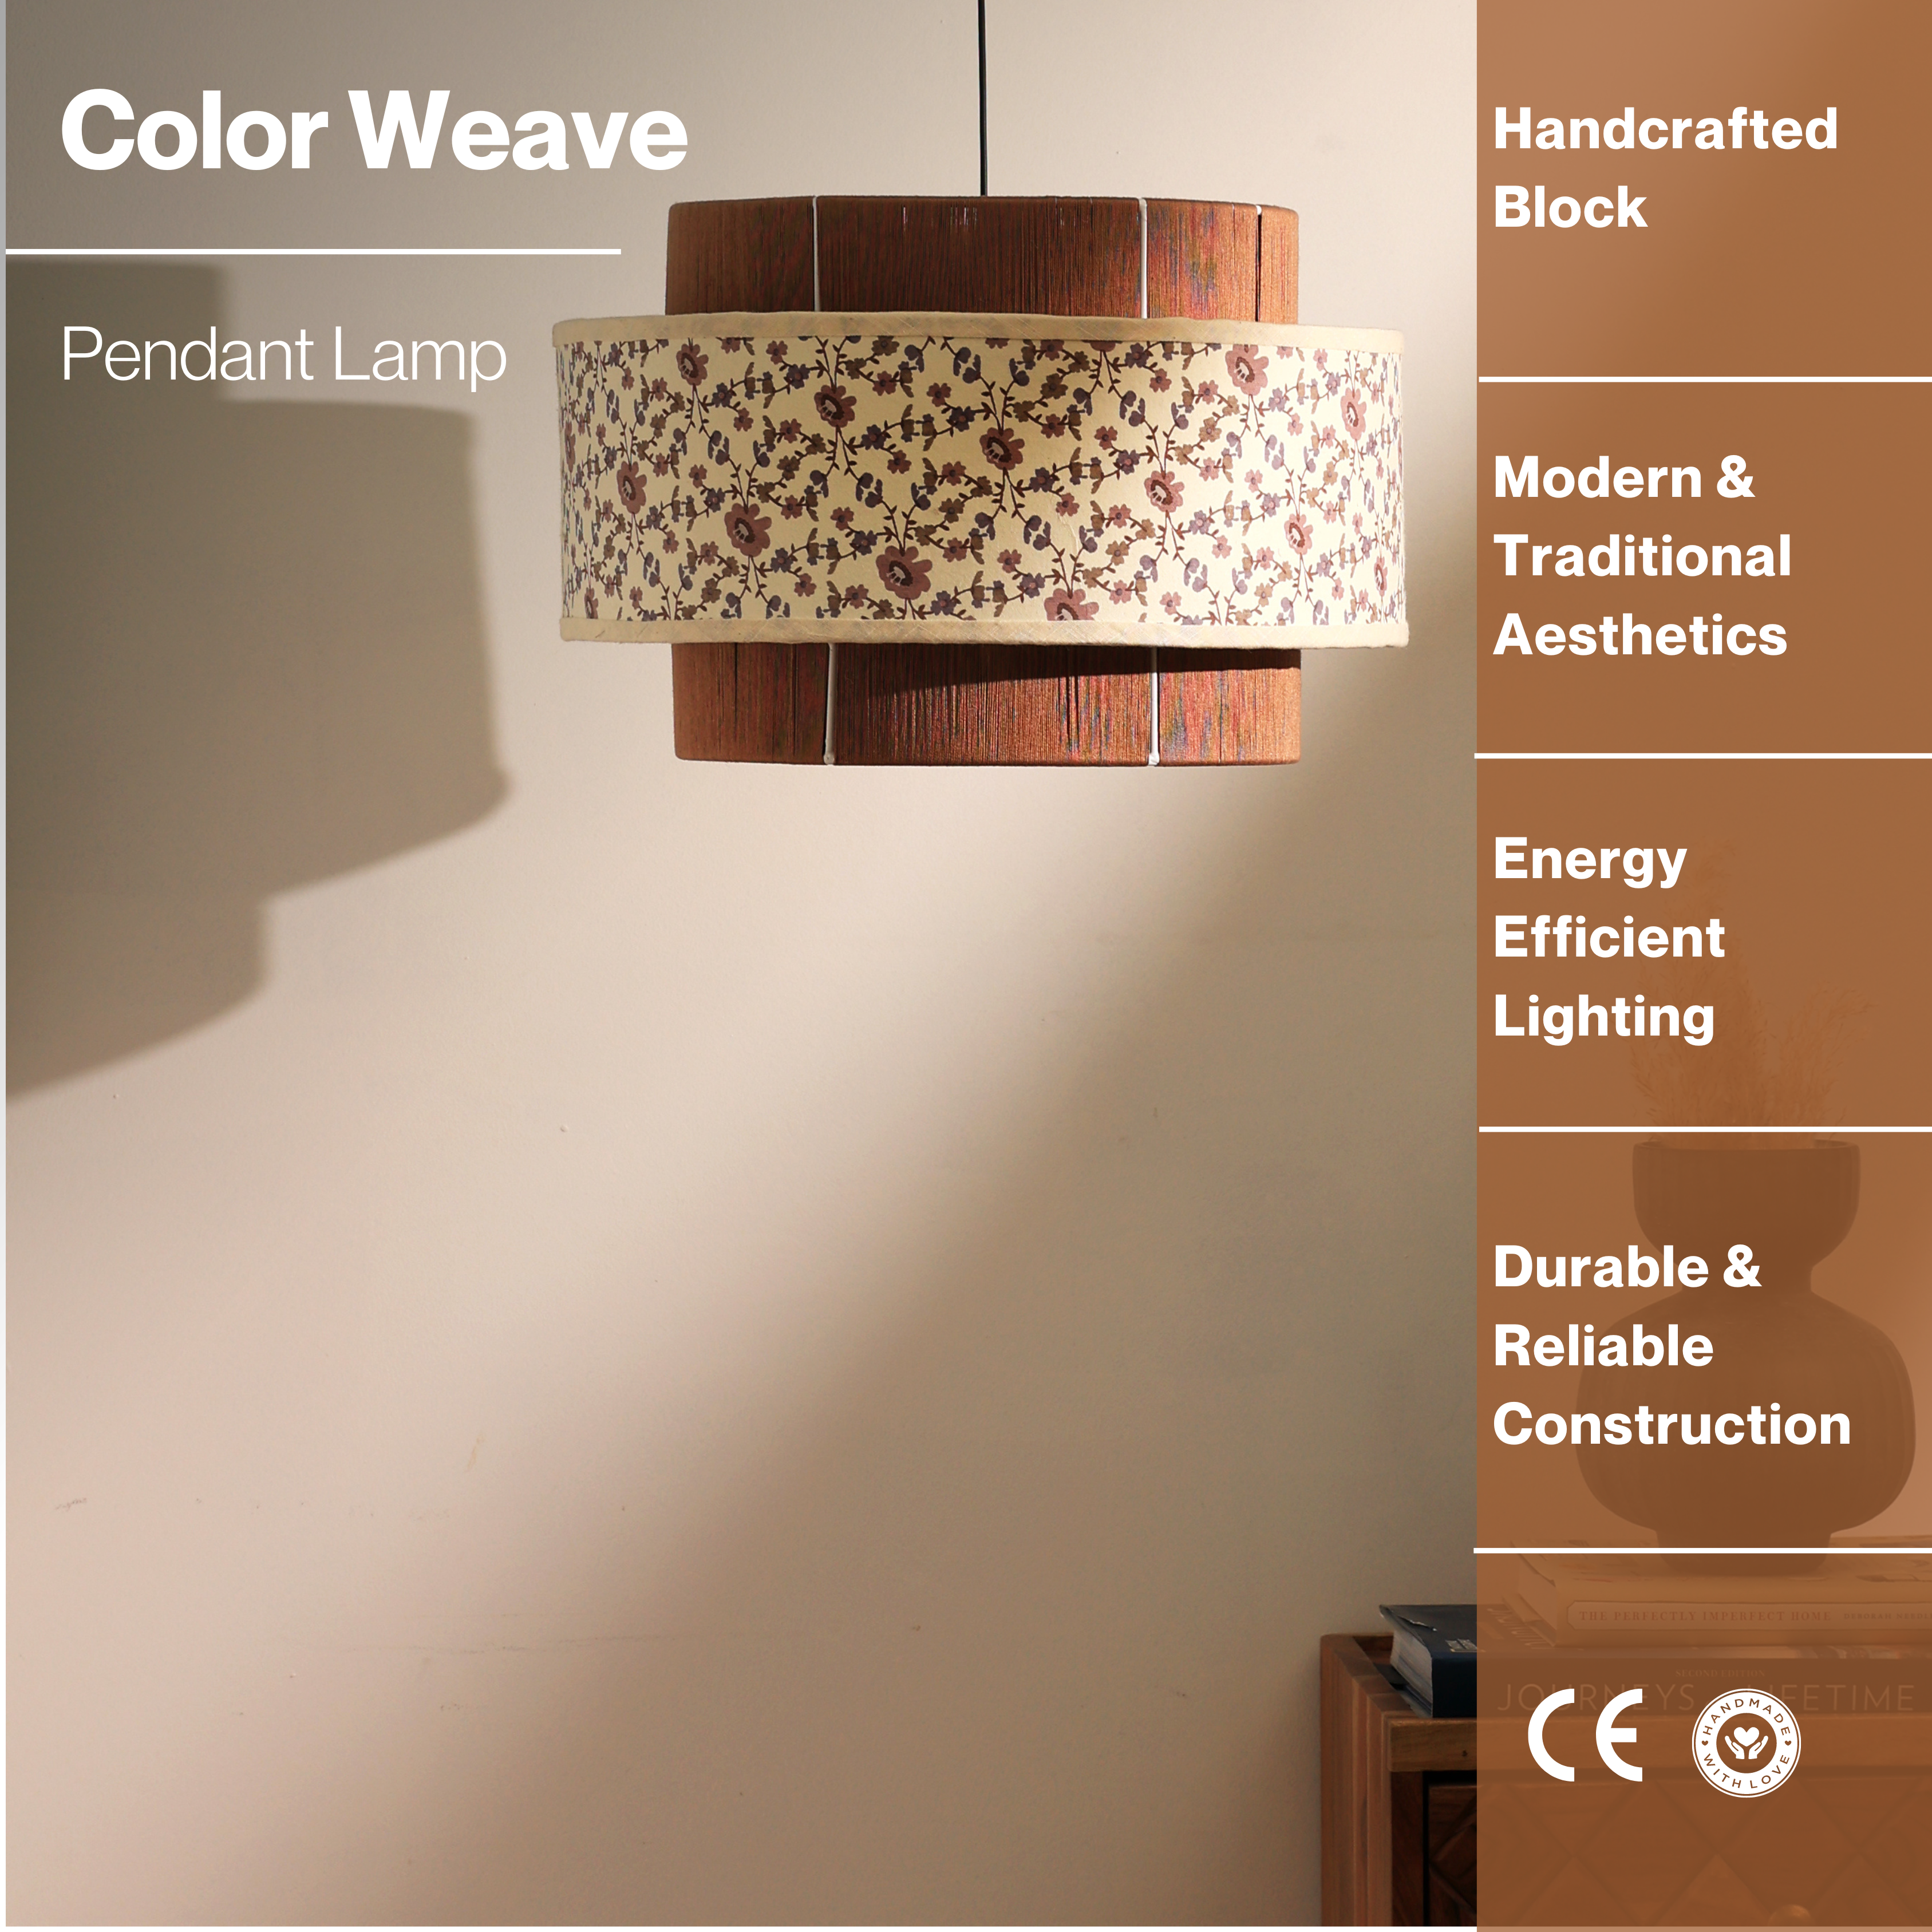 Colour Weave Pendant Lamp - Threading, Handmade Pendant Light, Scandi-Style Hanging Light